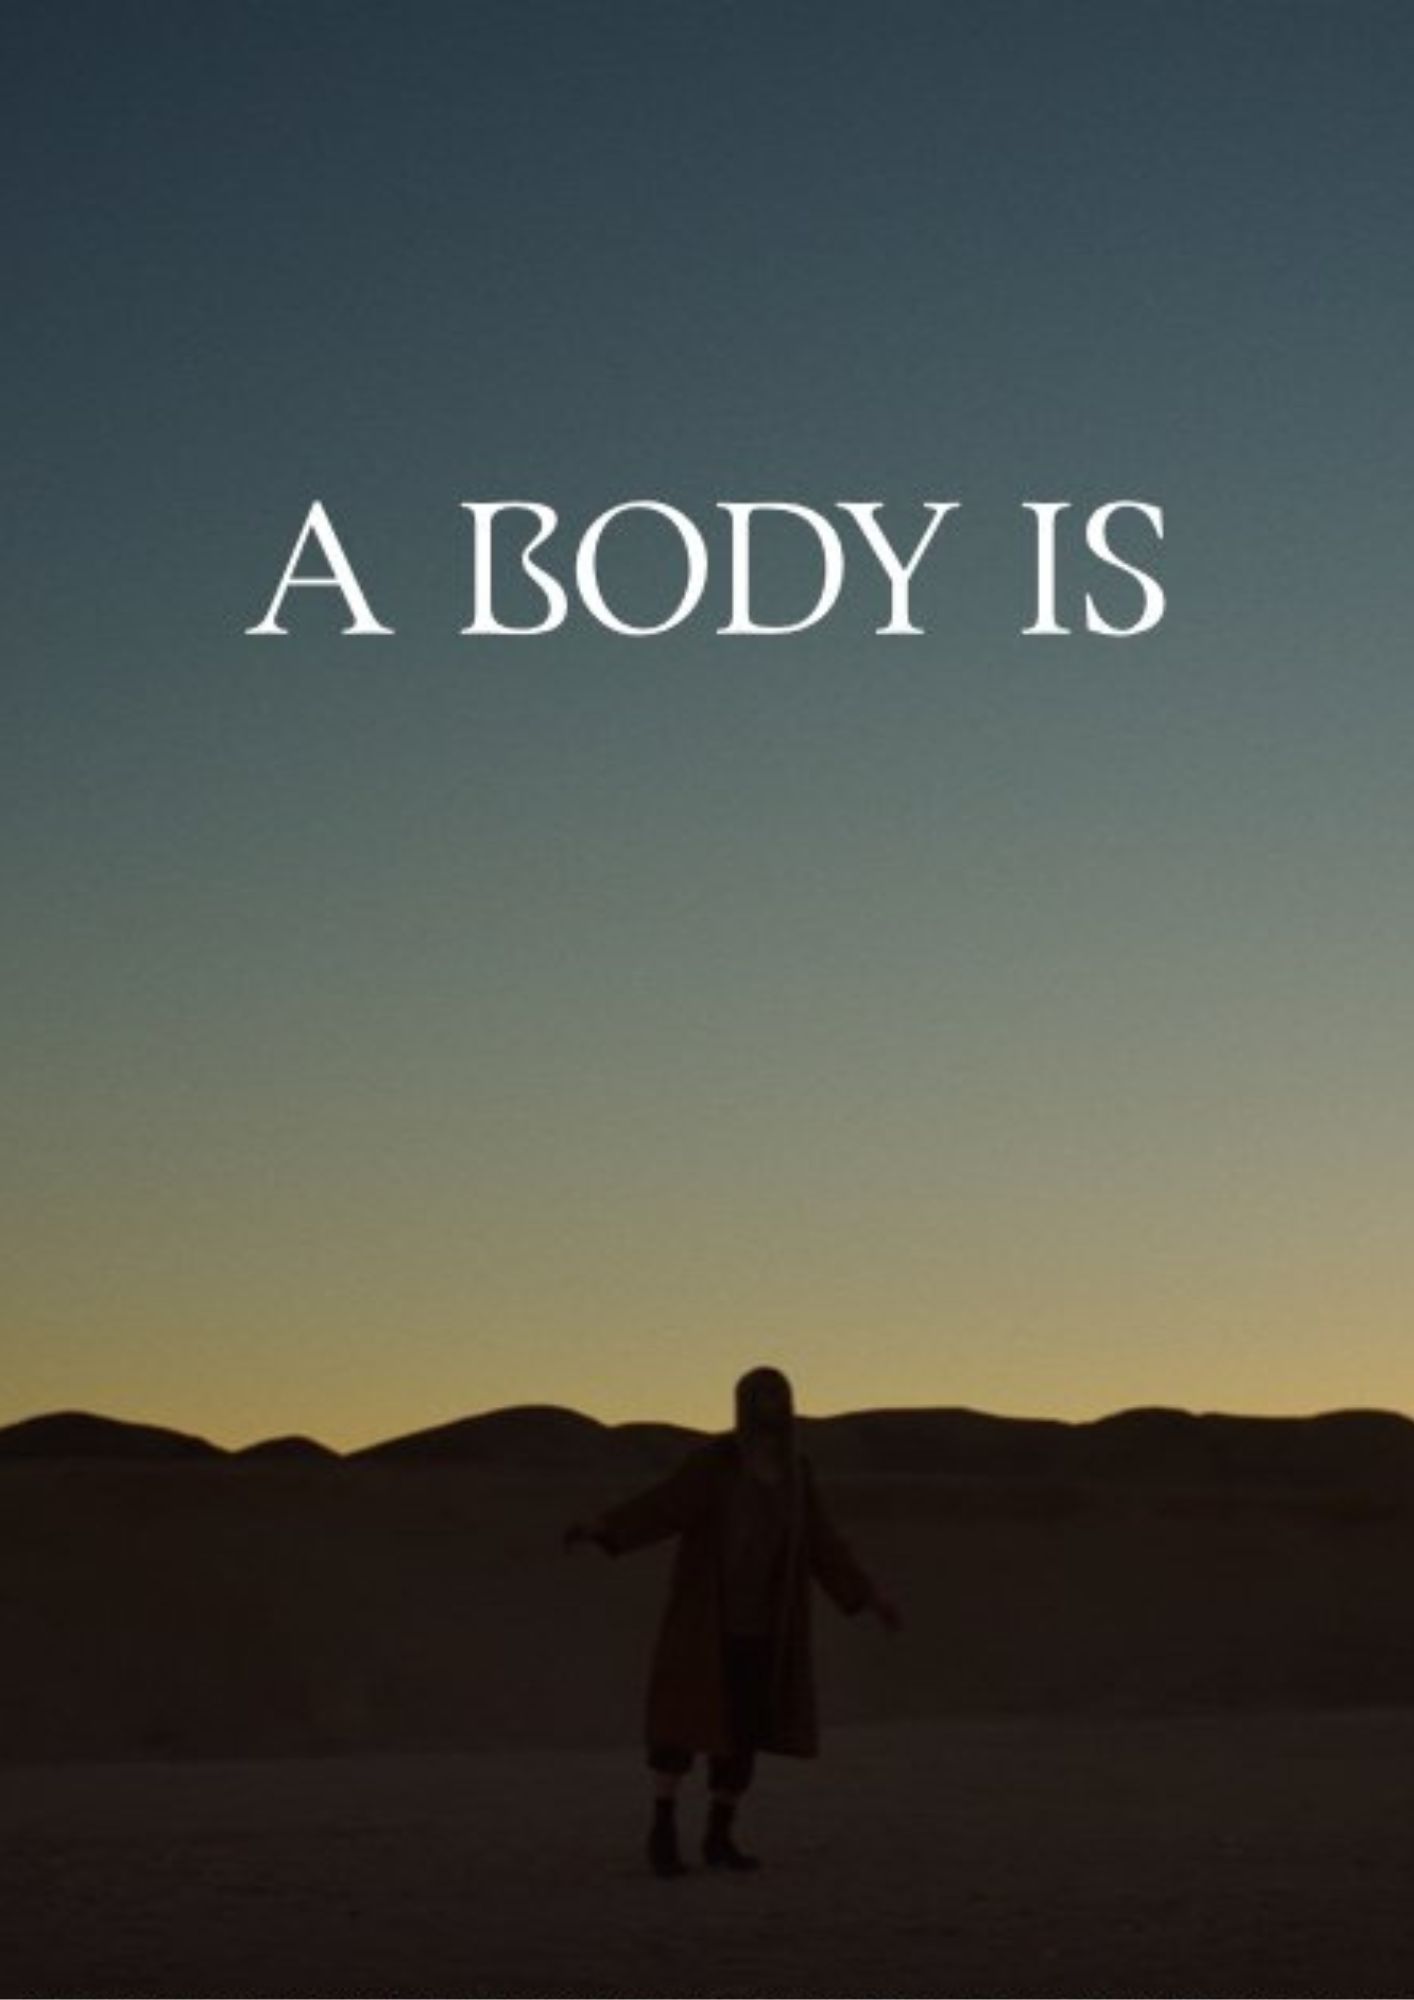 A body is